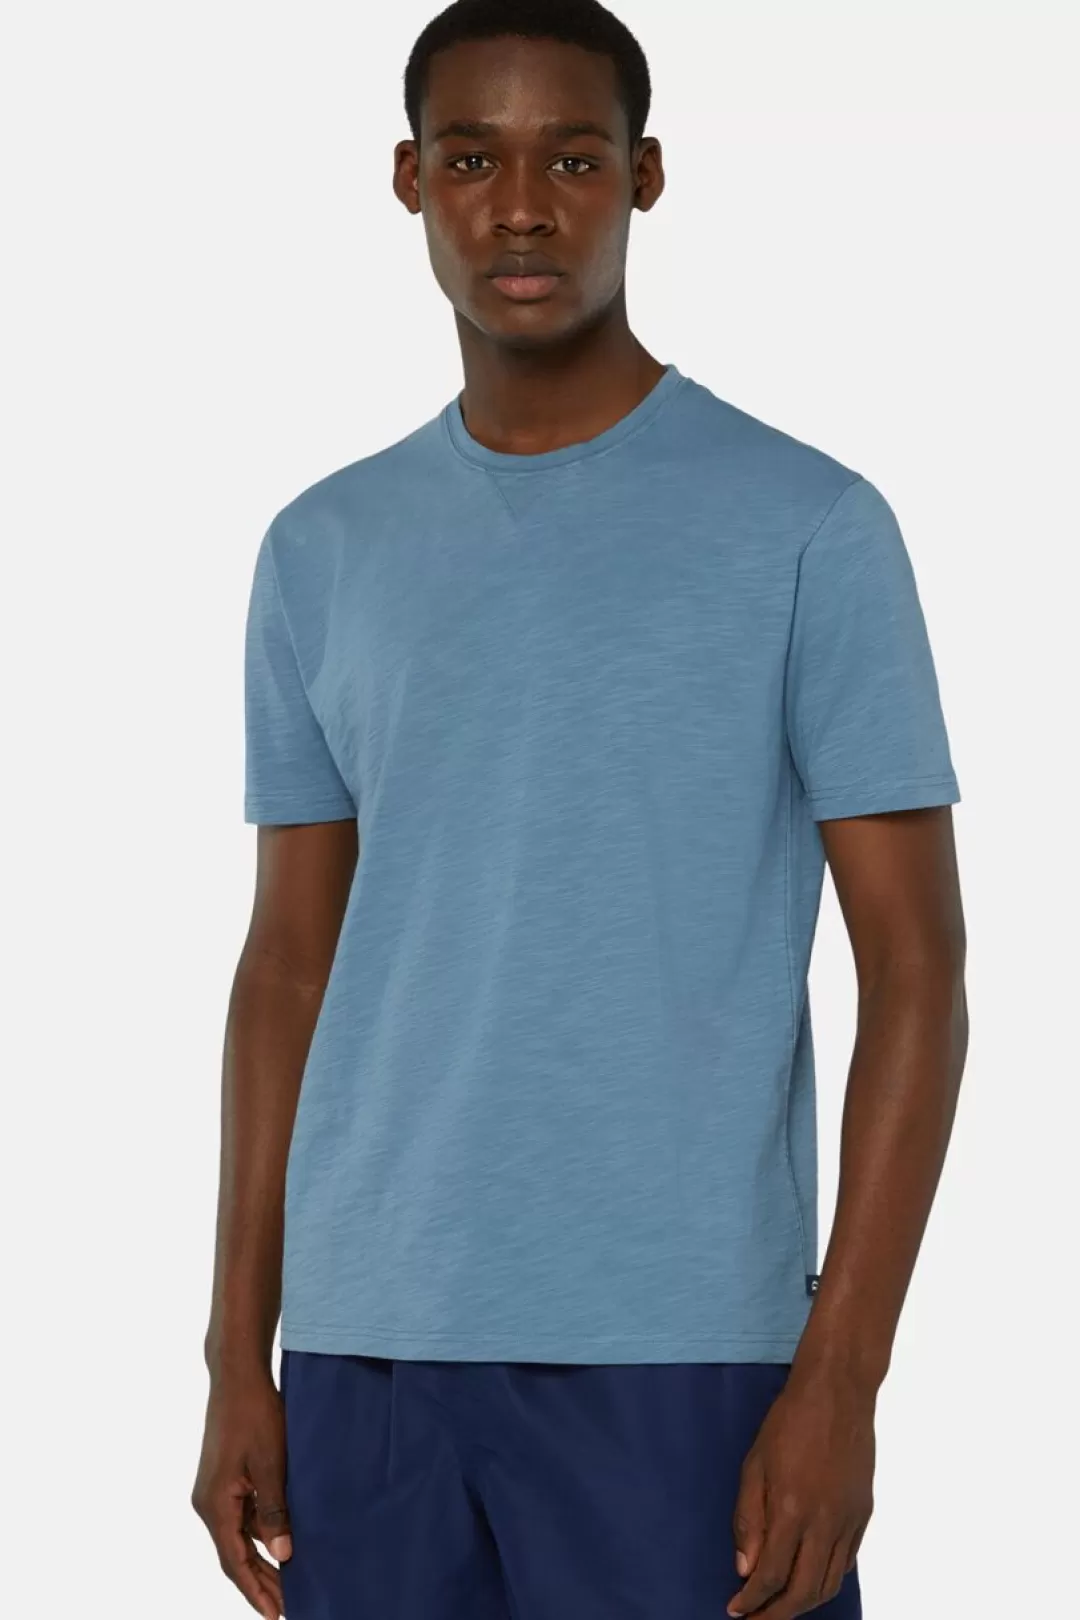 Boggi T-Shirt In Jersey Di Cotone Organico Slub Air-Blu Best Sale